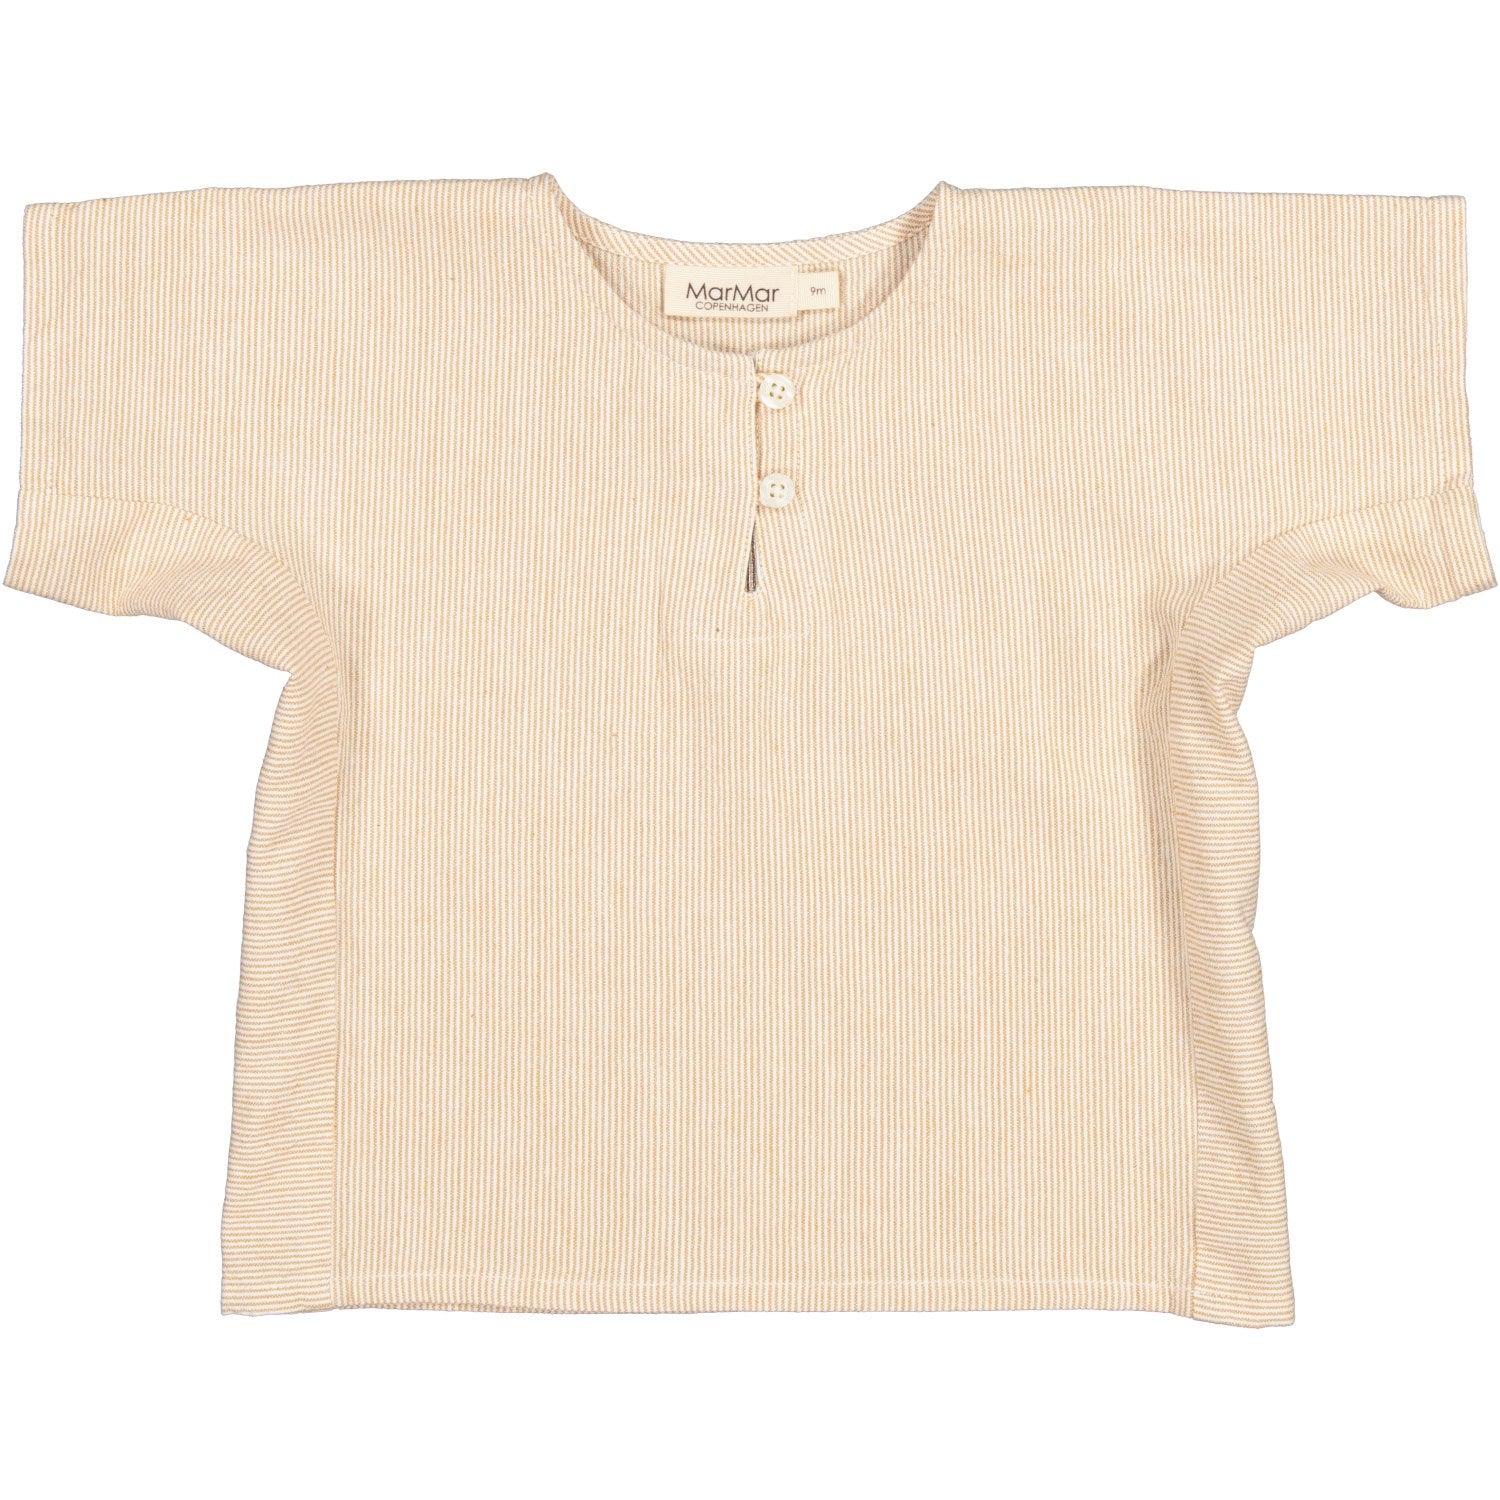 MarMar Fine Cotton Dijon Stripe Tomba T-shirt